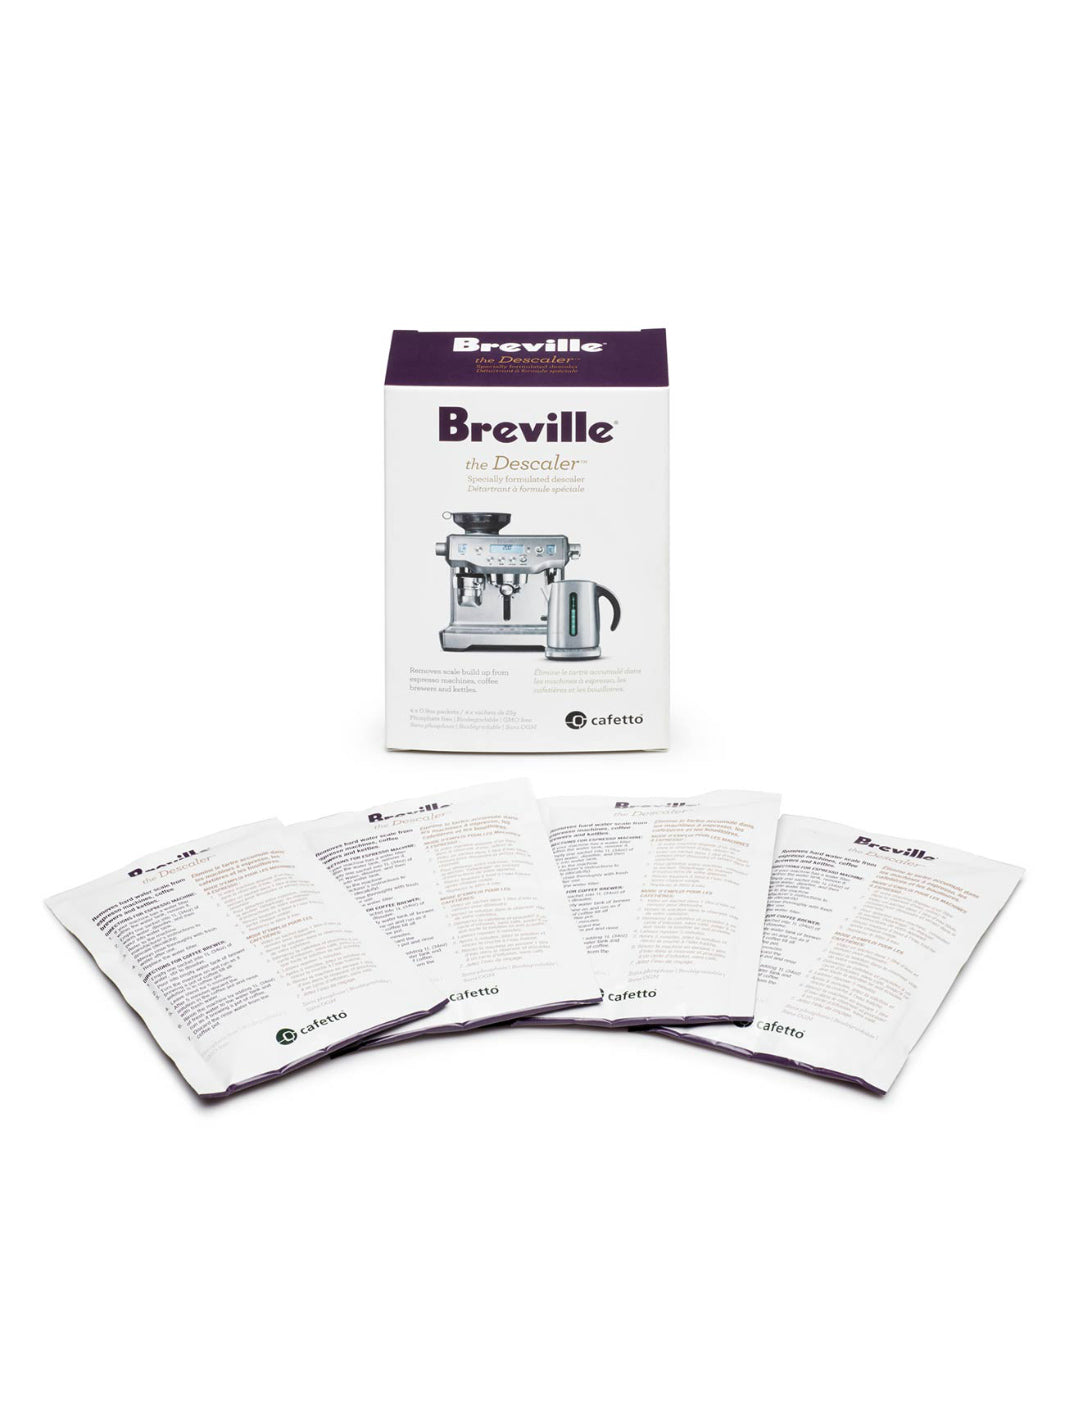 BREVILLE The Descaler™ (4-Pack)